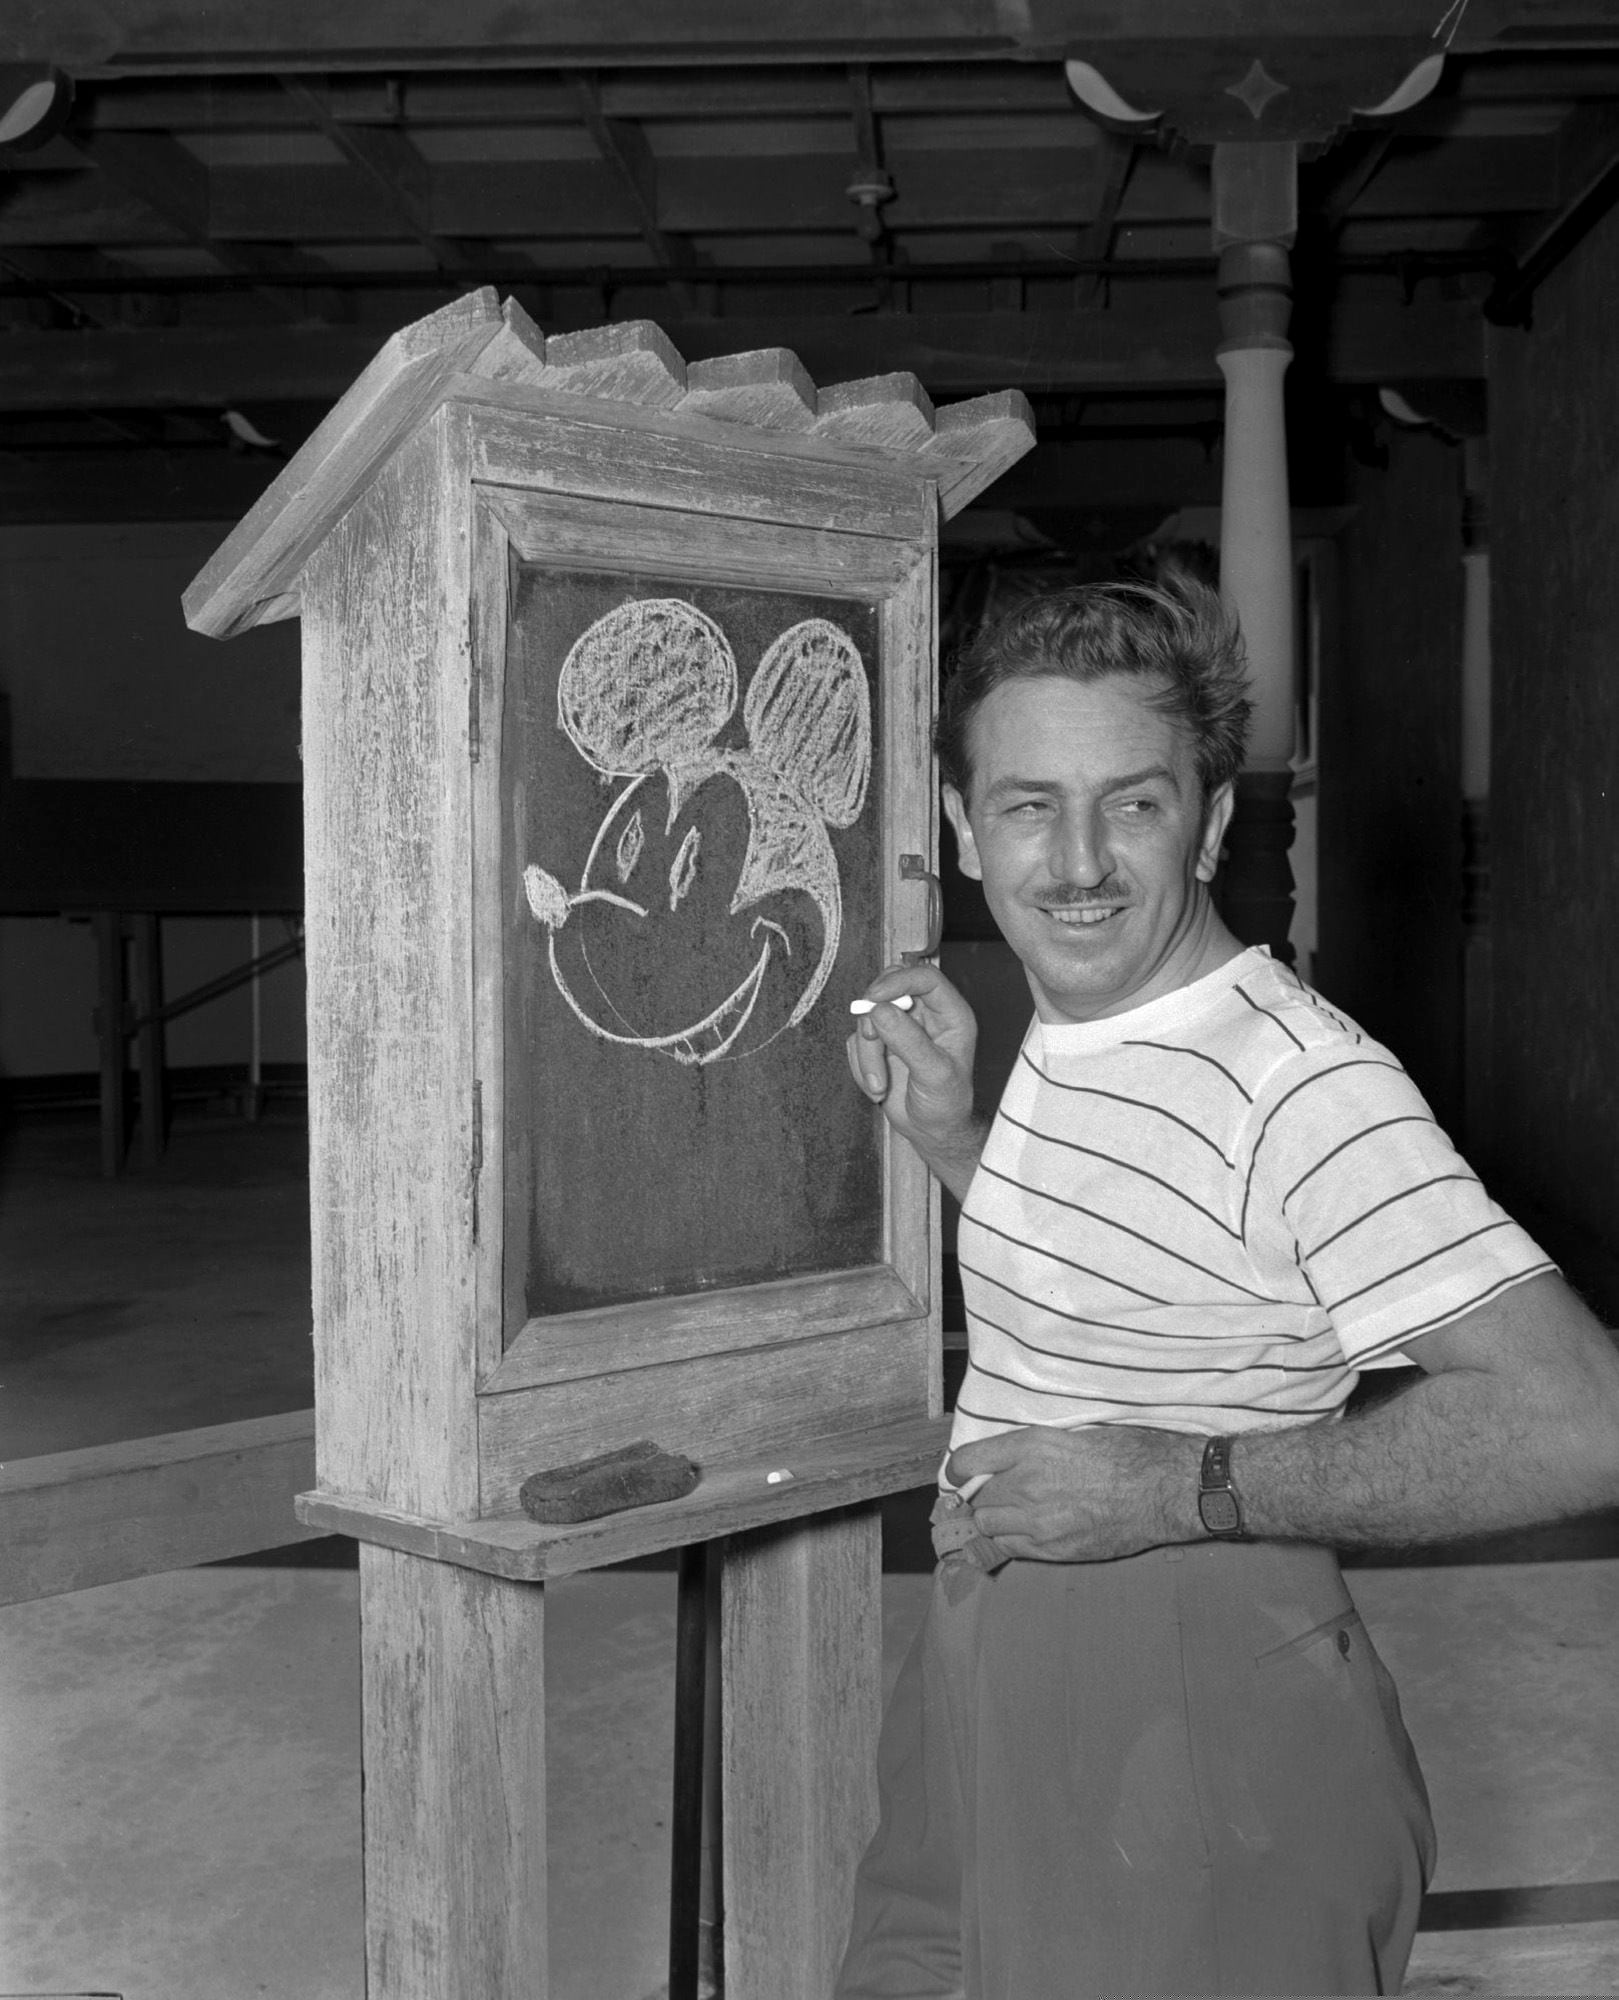  Walt Disney, creador de Mickey Mouse, posa en el Pancoast Hotel, en diciembre de 1941 (AP, archivo)
